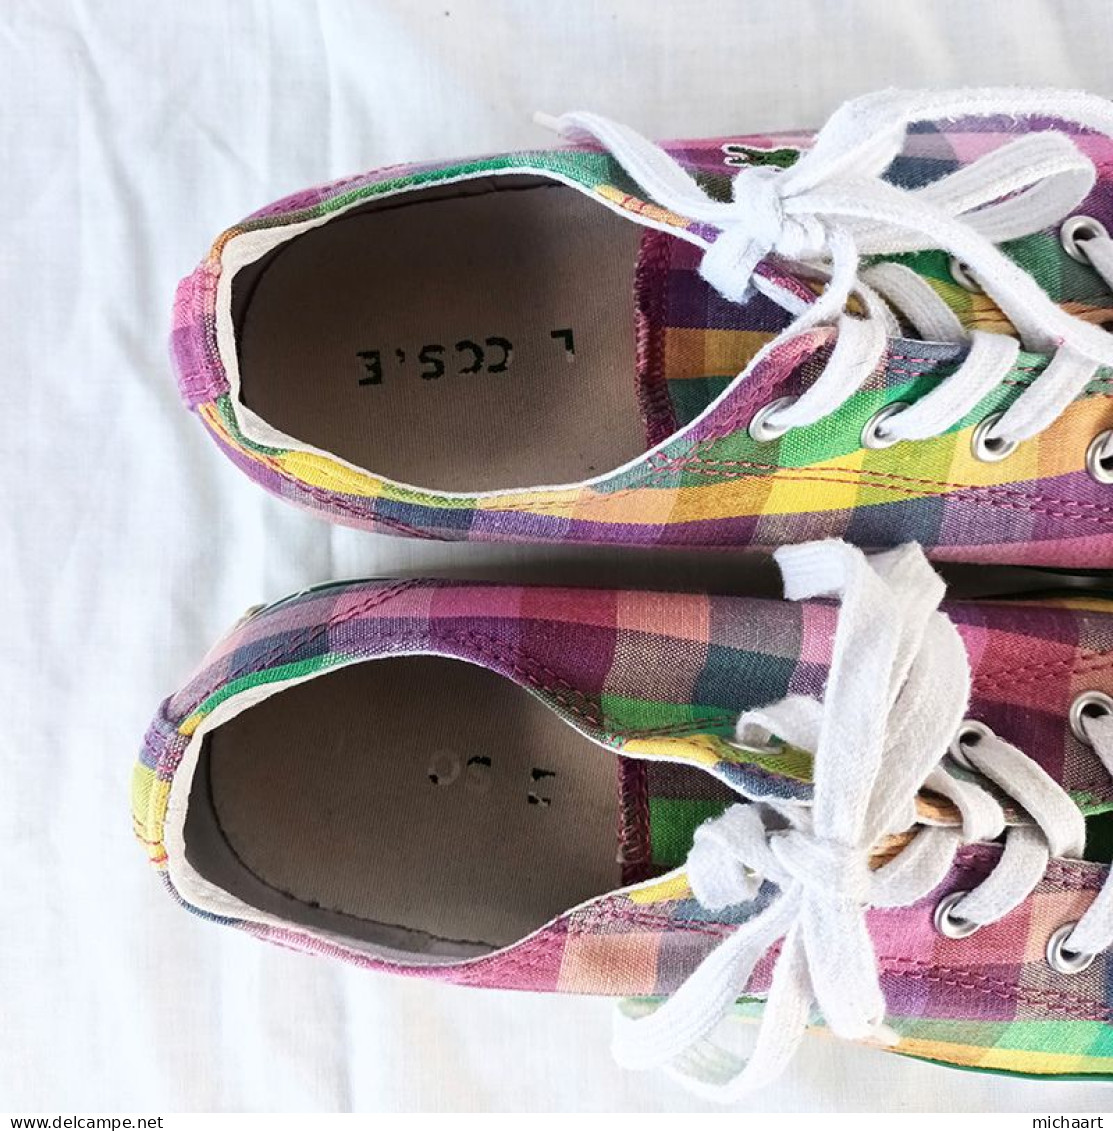 Lacoste Women Shoes Size 8 Multicolor L27 14 SRW TXT Low Top Sneaker 04012